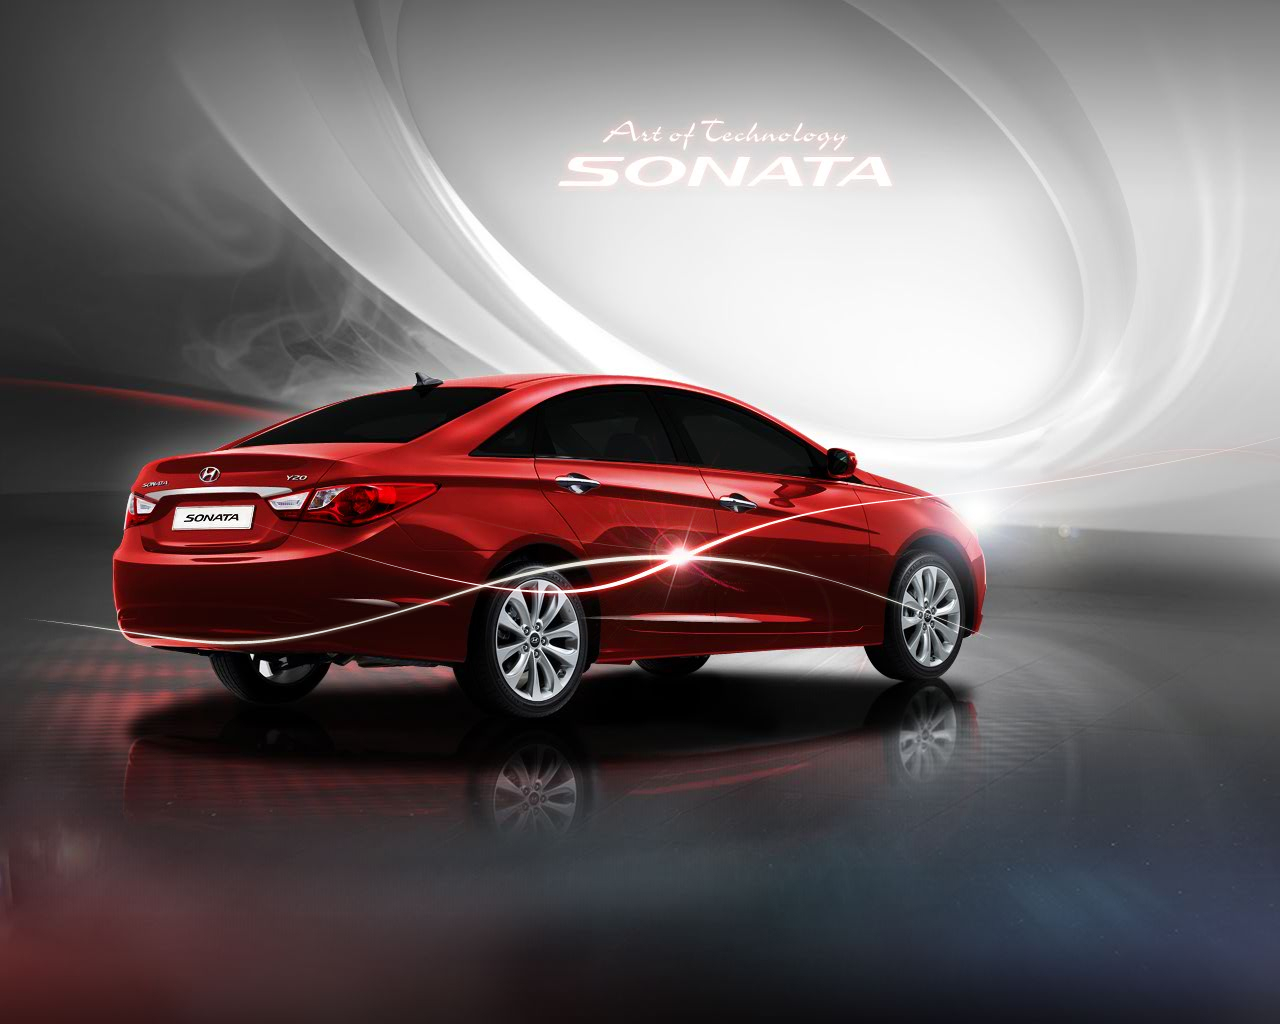 التقرير المتكامل عن سوناتا 2011 Equus_2011-Hyundai-Sonata-3